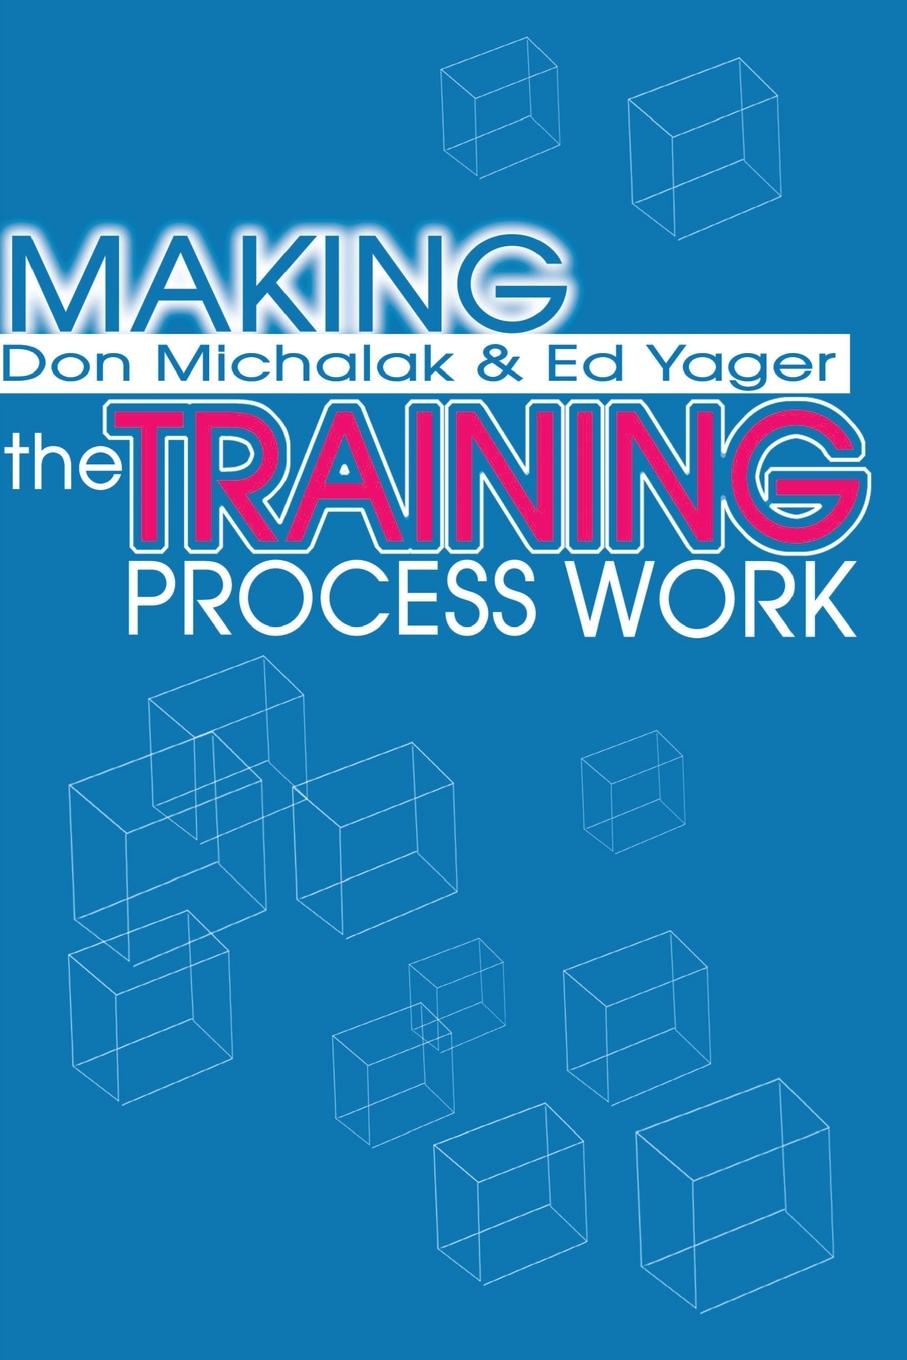 Making the Training Process Work - Michalak, Donald F. Yager, Edwin G.